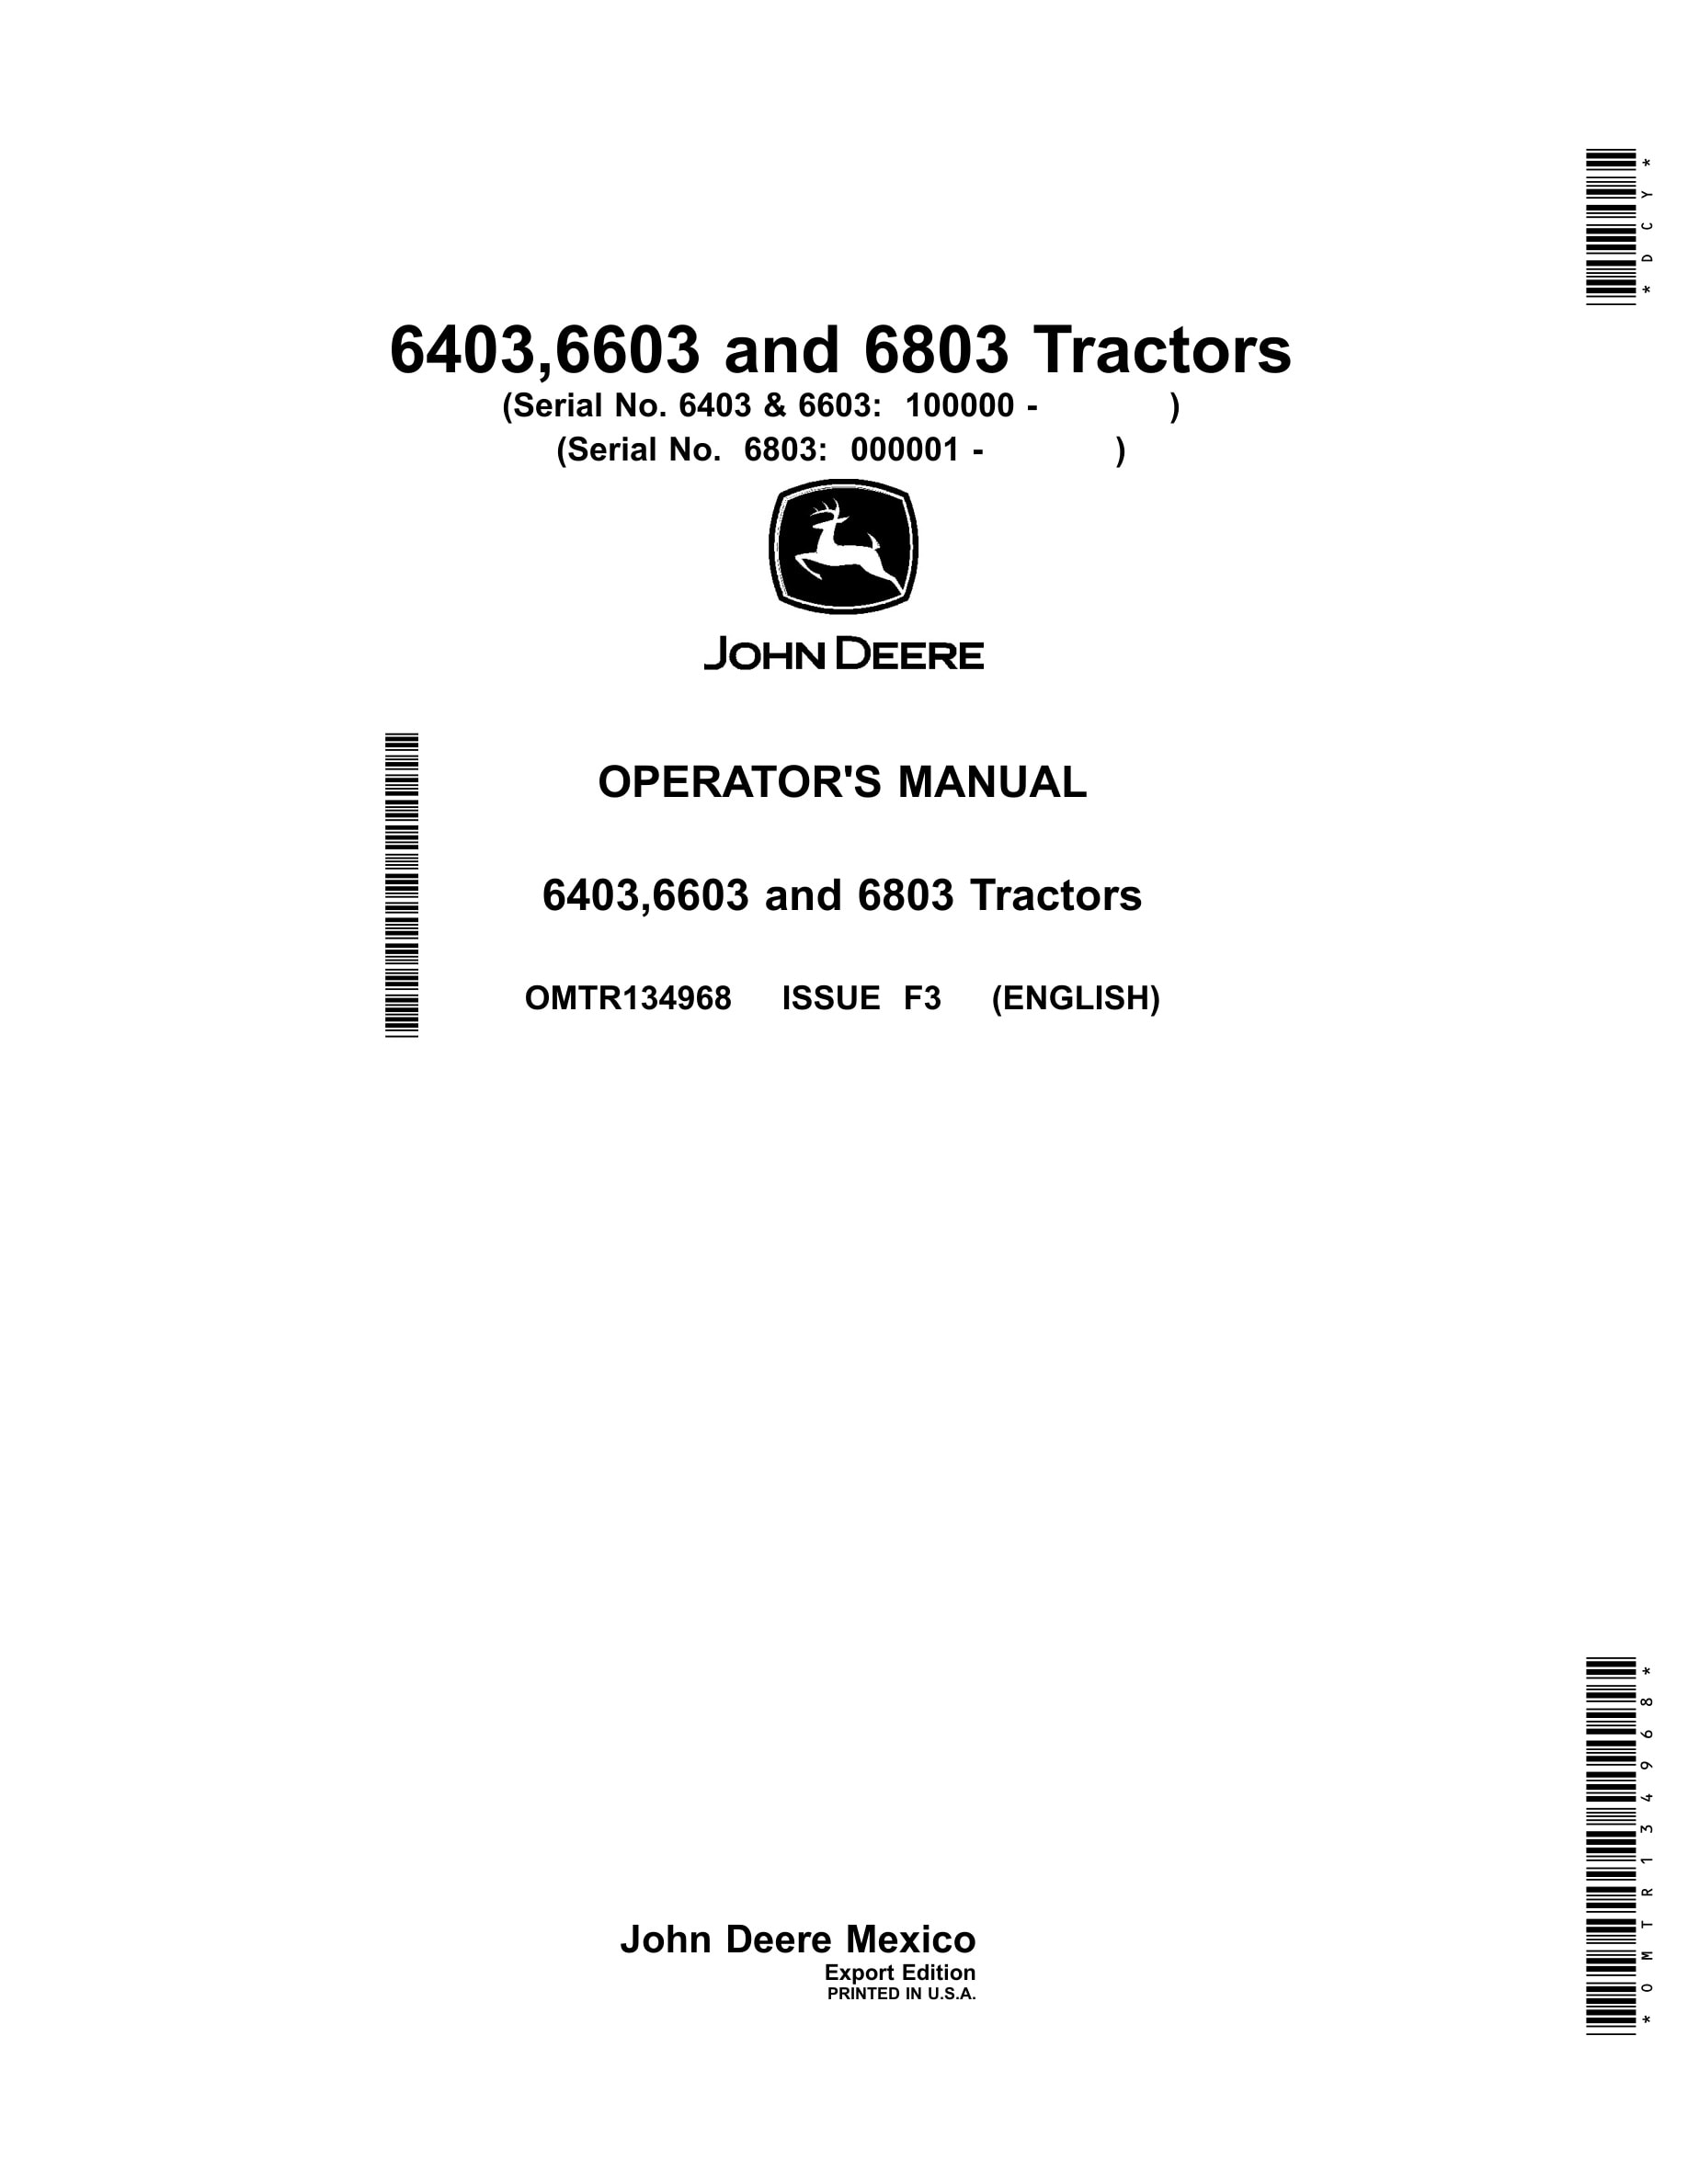 John Deere 6403,6603 And 6803 Tractors Operator Manuals OMTR134968-1